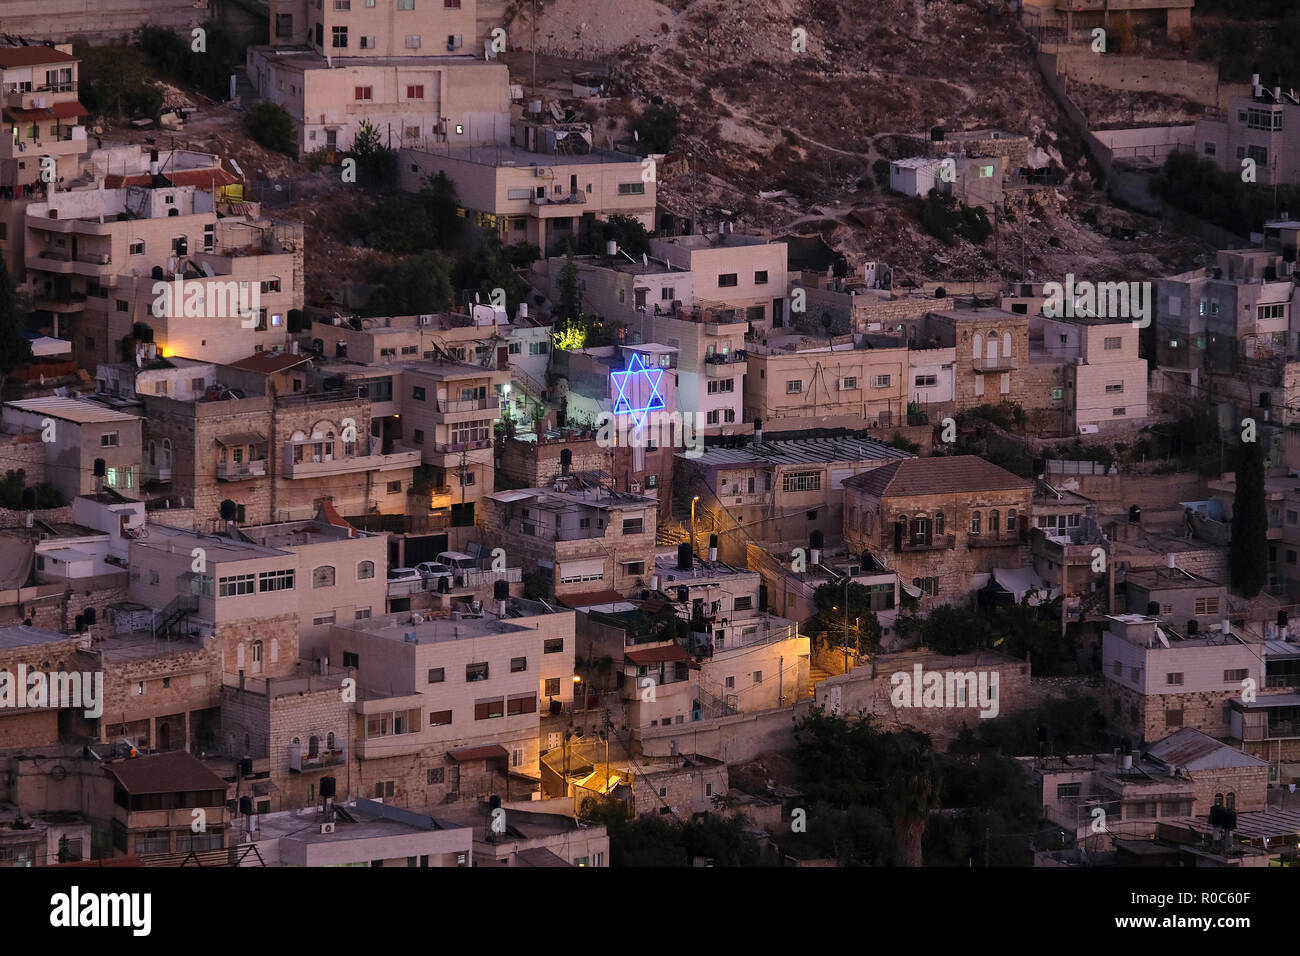 Une étoile géante et illuminée de David a placé à l'extérieur d'un bâtiment de colons juifs dans la région de Batan al-Hawa à Silwan, un quartier majoritairement palestinien à la périphérie de la vieille ville à Jérusalem-est, en Israël. Banque D'Images